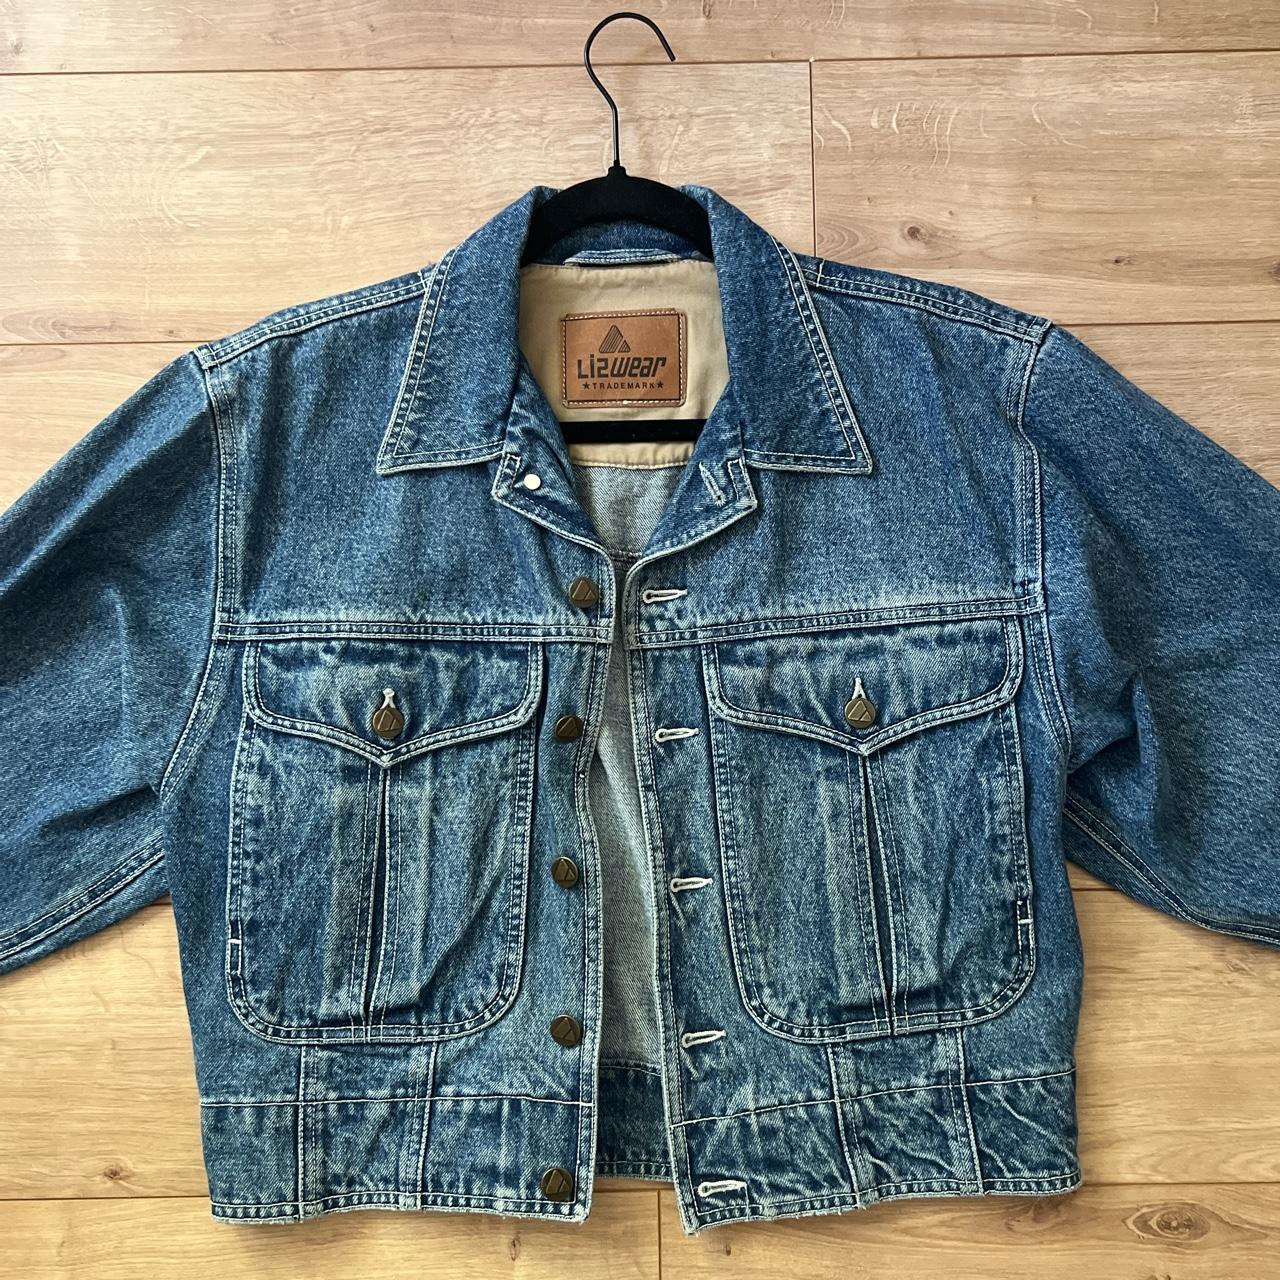 lizwear vintage jean jacket - Depop